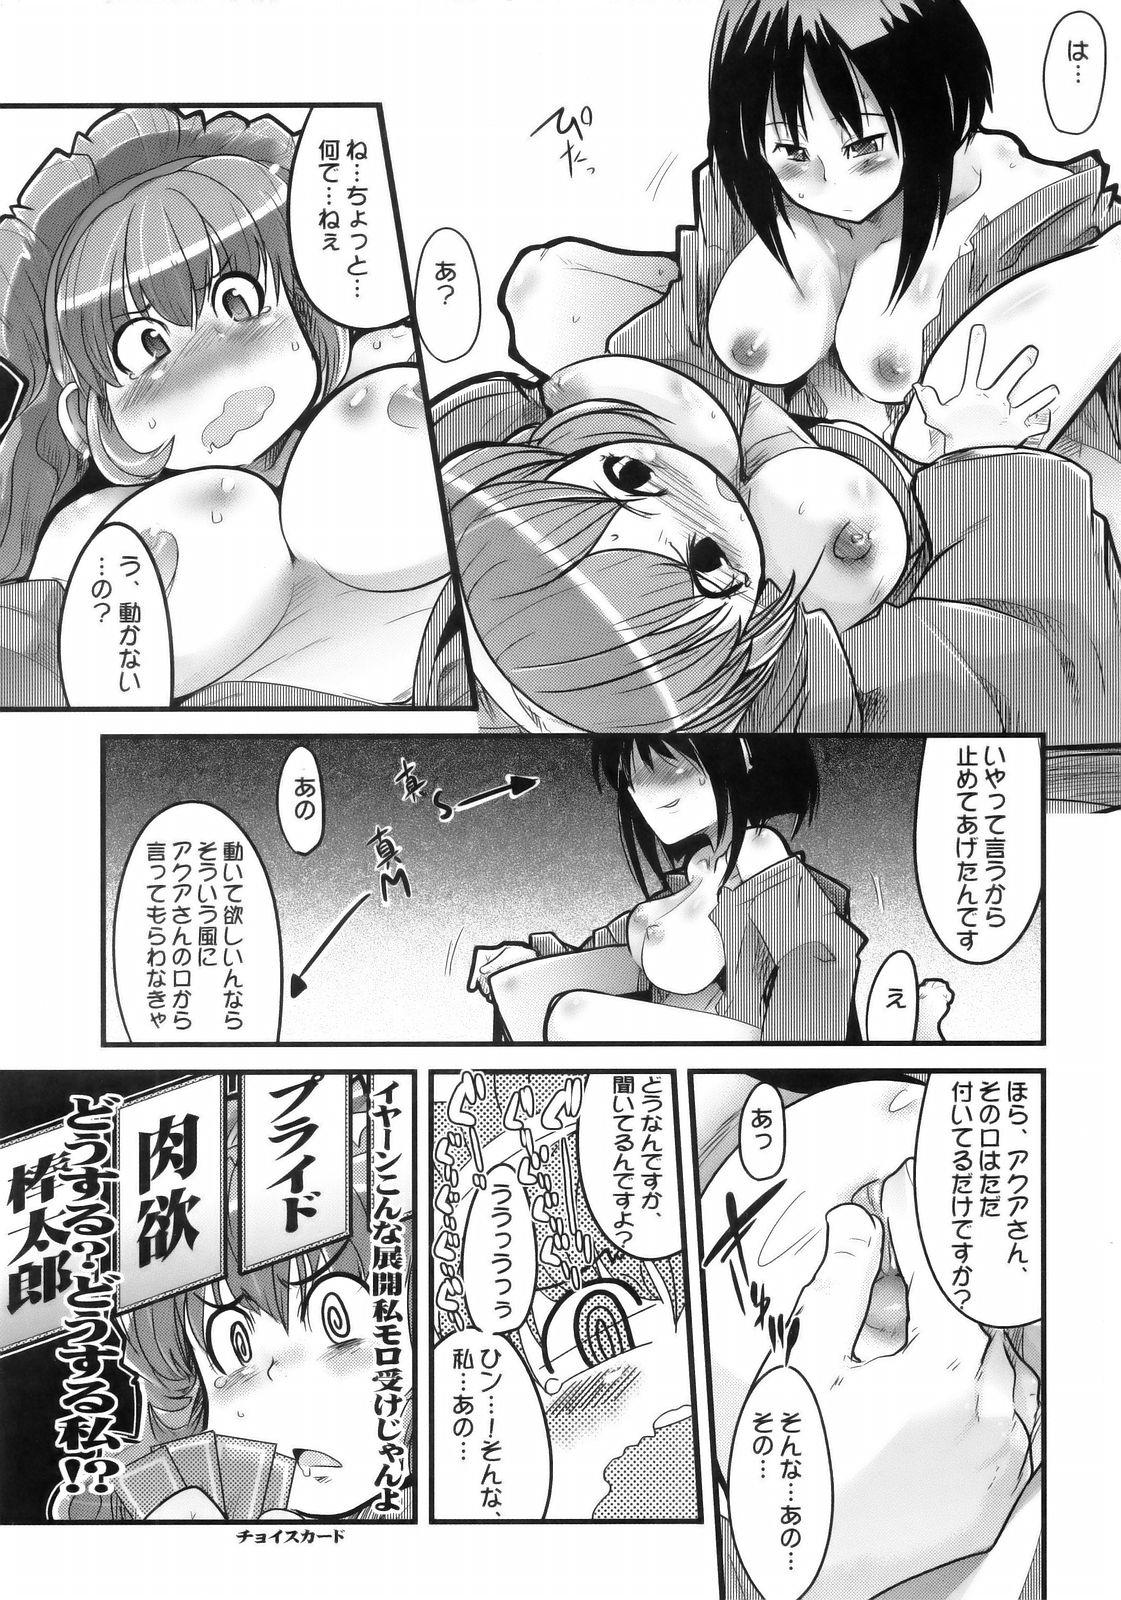 Bath Boku no Watashi no Super Bobobbo Taisen MGJOX - Super robot wars Cuck - Page 12